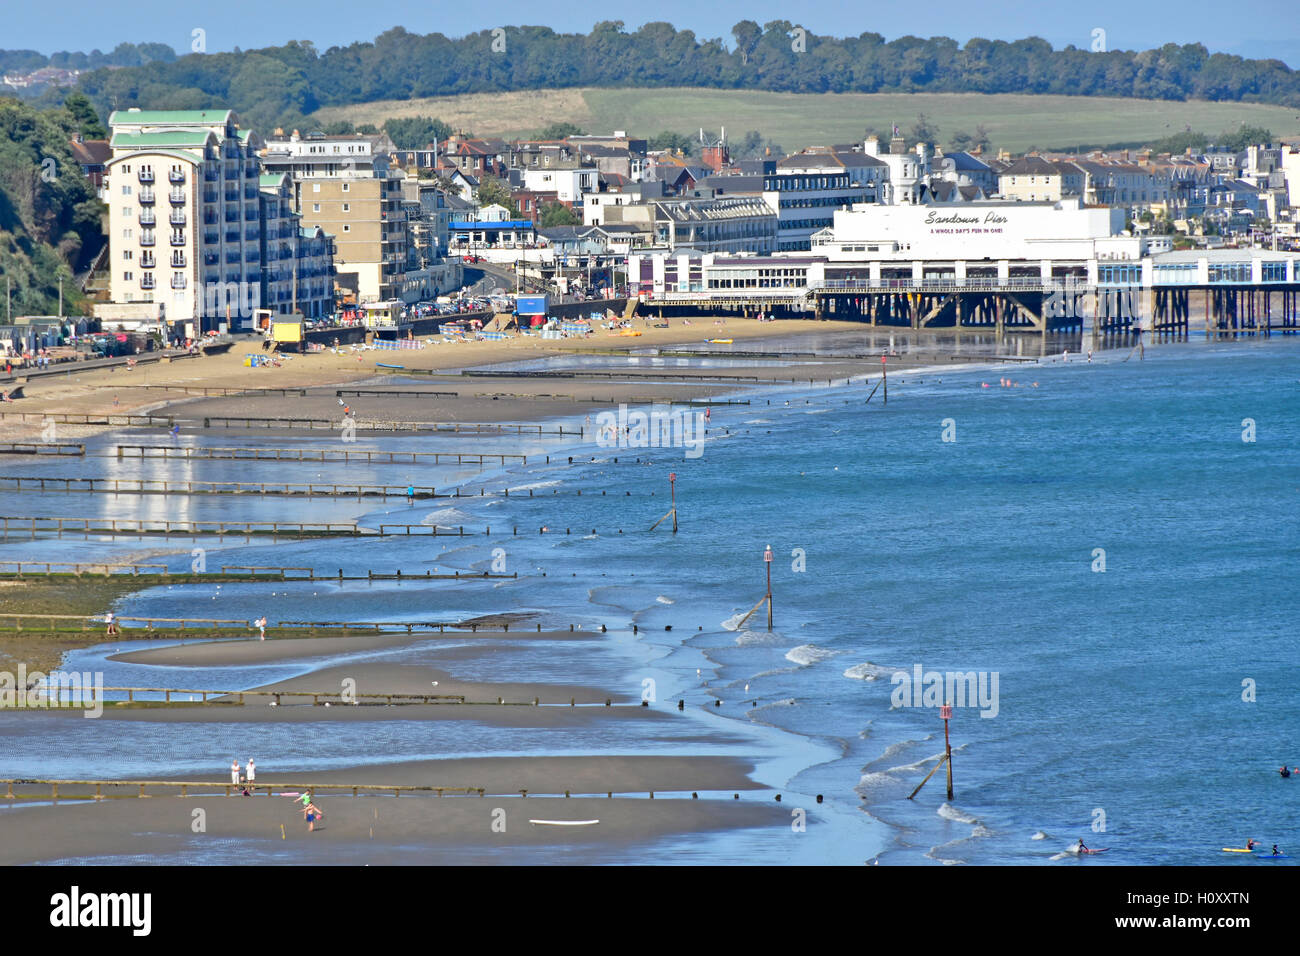 Vue de dessus la station beach holiday resort jetée de Sandown Isle of Wight brise-lames de la mer à marée basse et l'aine Angleterre Royaume-Uni le ciel bleu d'été de jour Banque D'Images